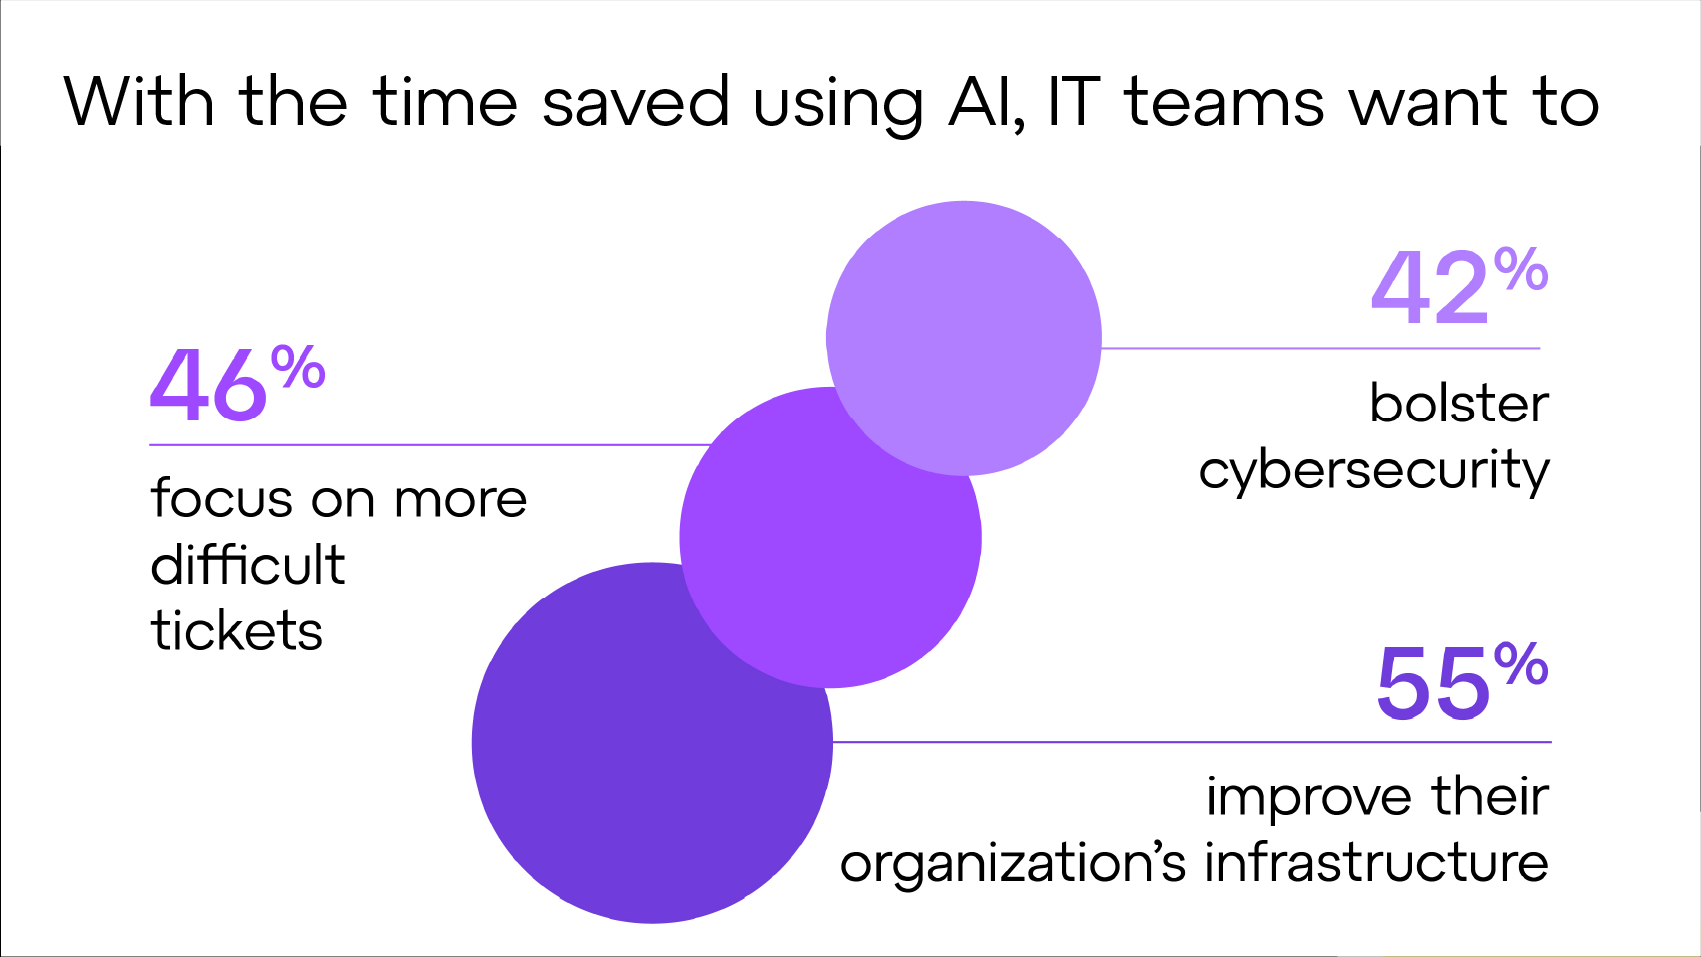 Com a economia de tempo que a IA geraria, as equipes de TI optariam por se concentrar em tickets mais difíceis, fortalecer a segurança cibernética e melhorar a infraestrutura da organização.